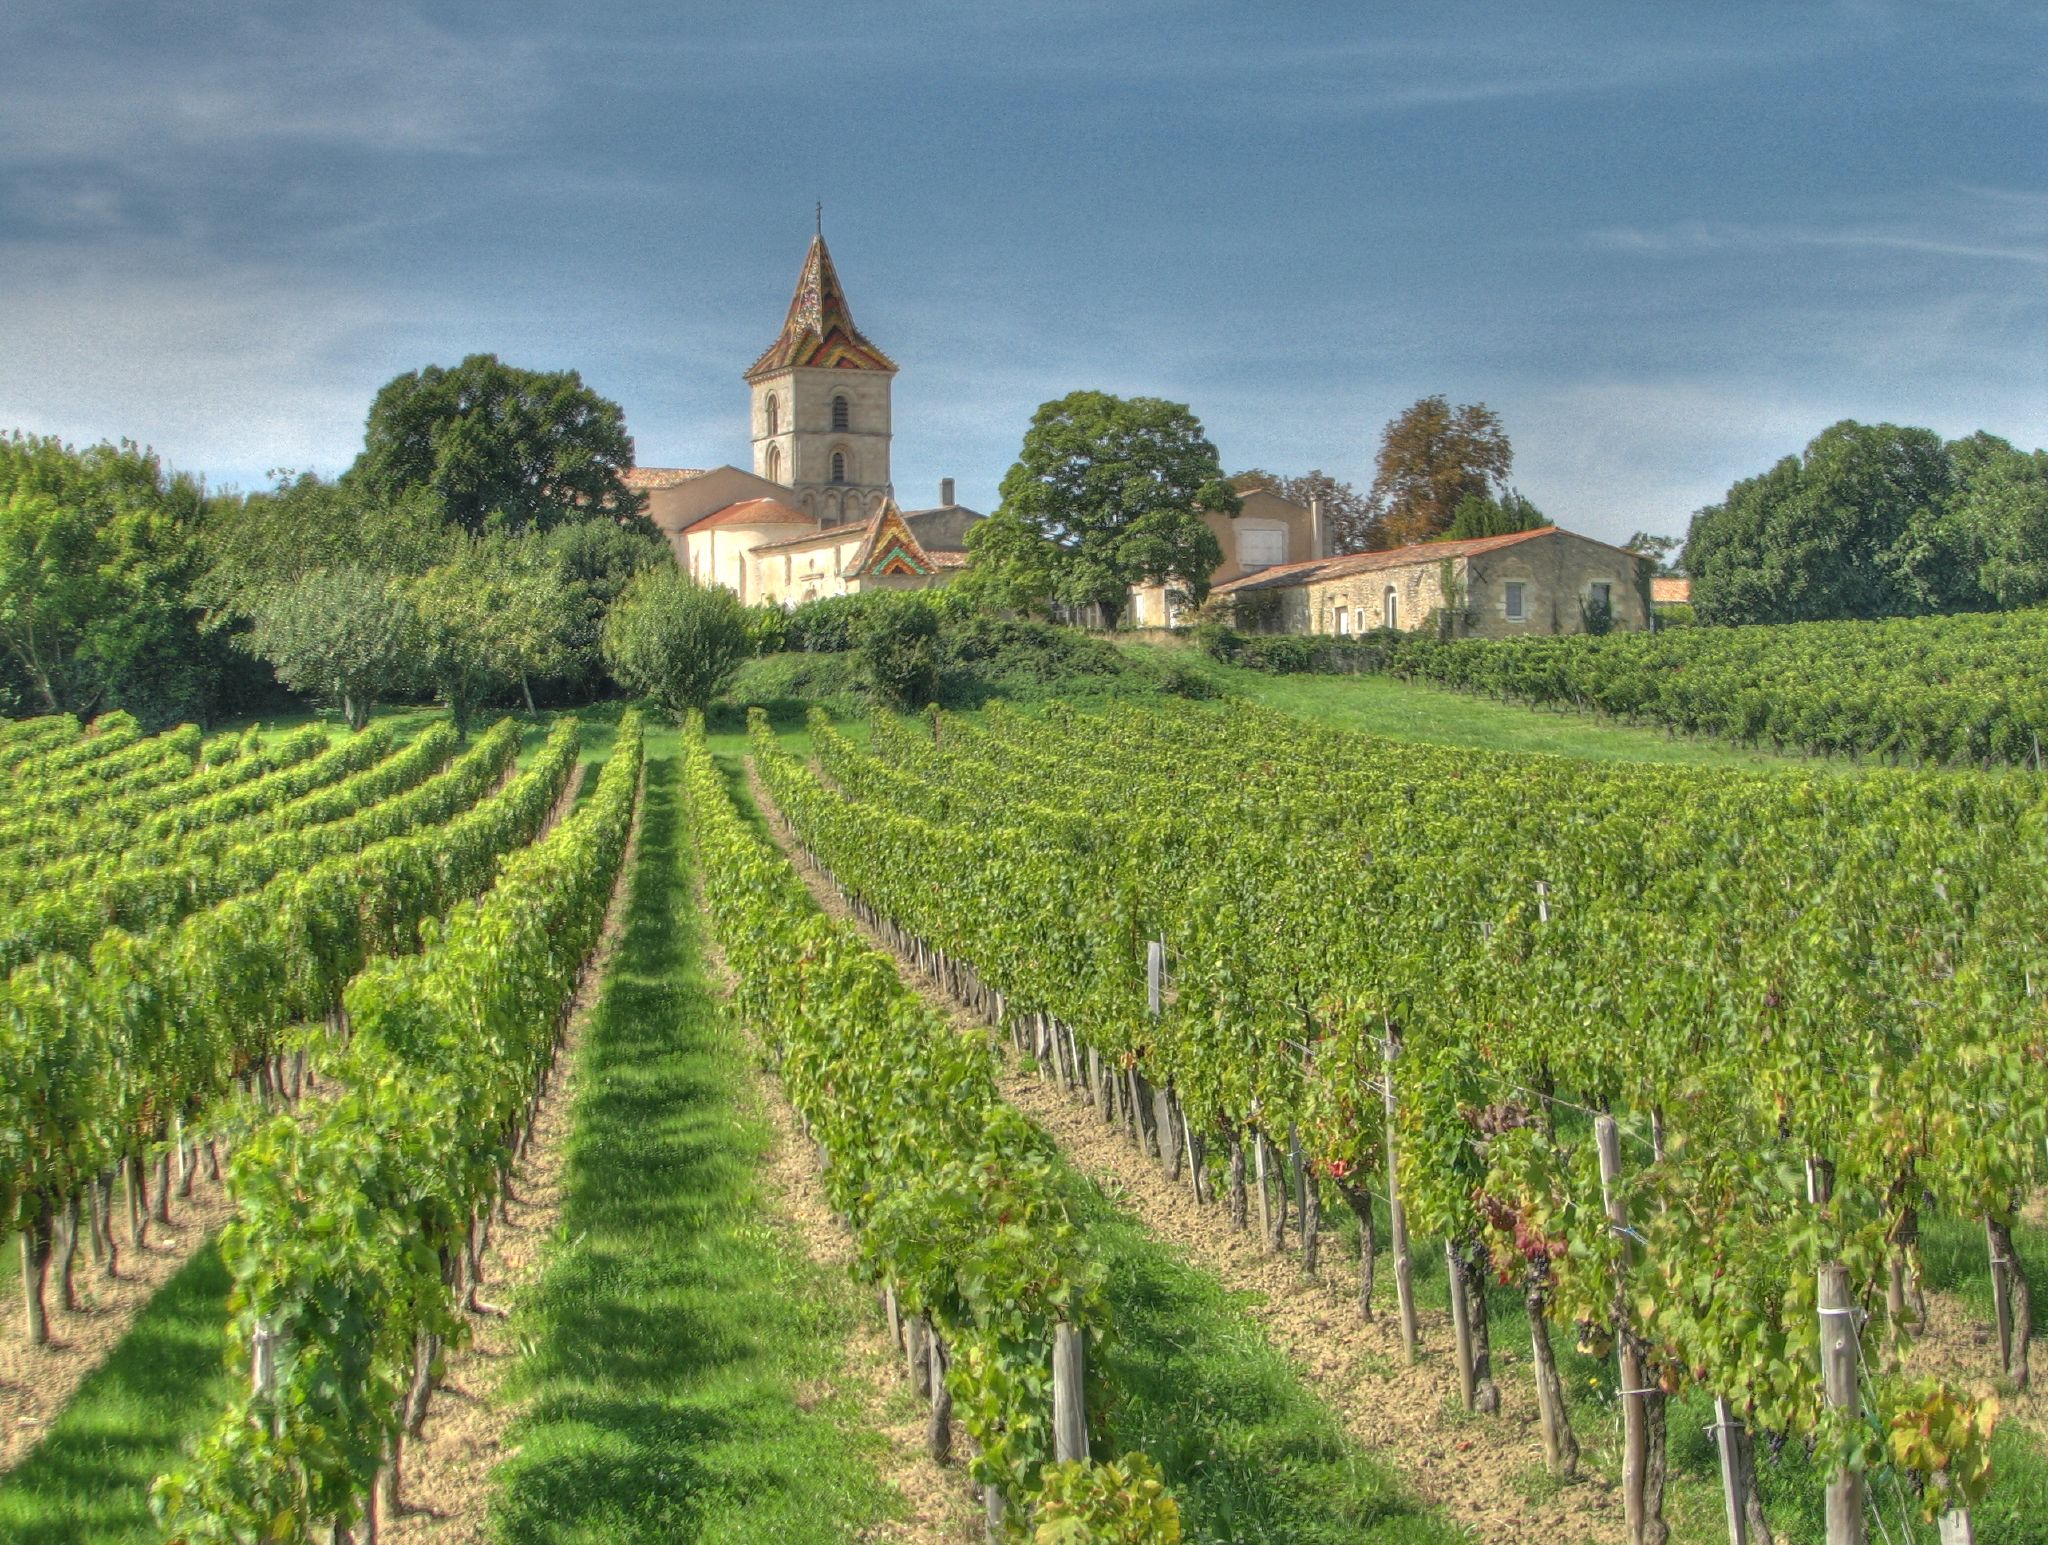 Oblast, kde se víno vyrábí, je důležitým faktorem pro určení nejlepších vín, do kterých lze investovat v roce 2022 a 2023.